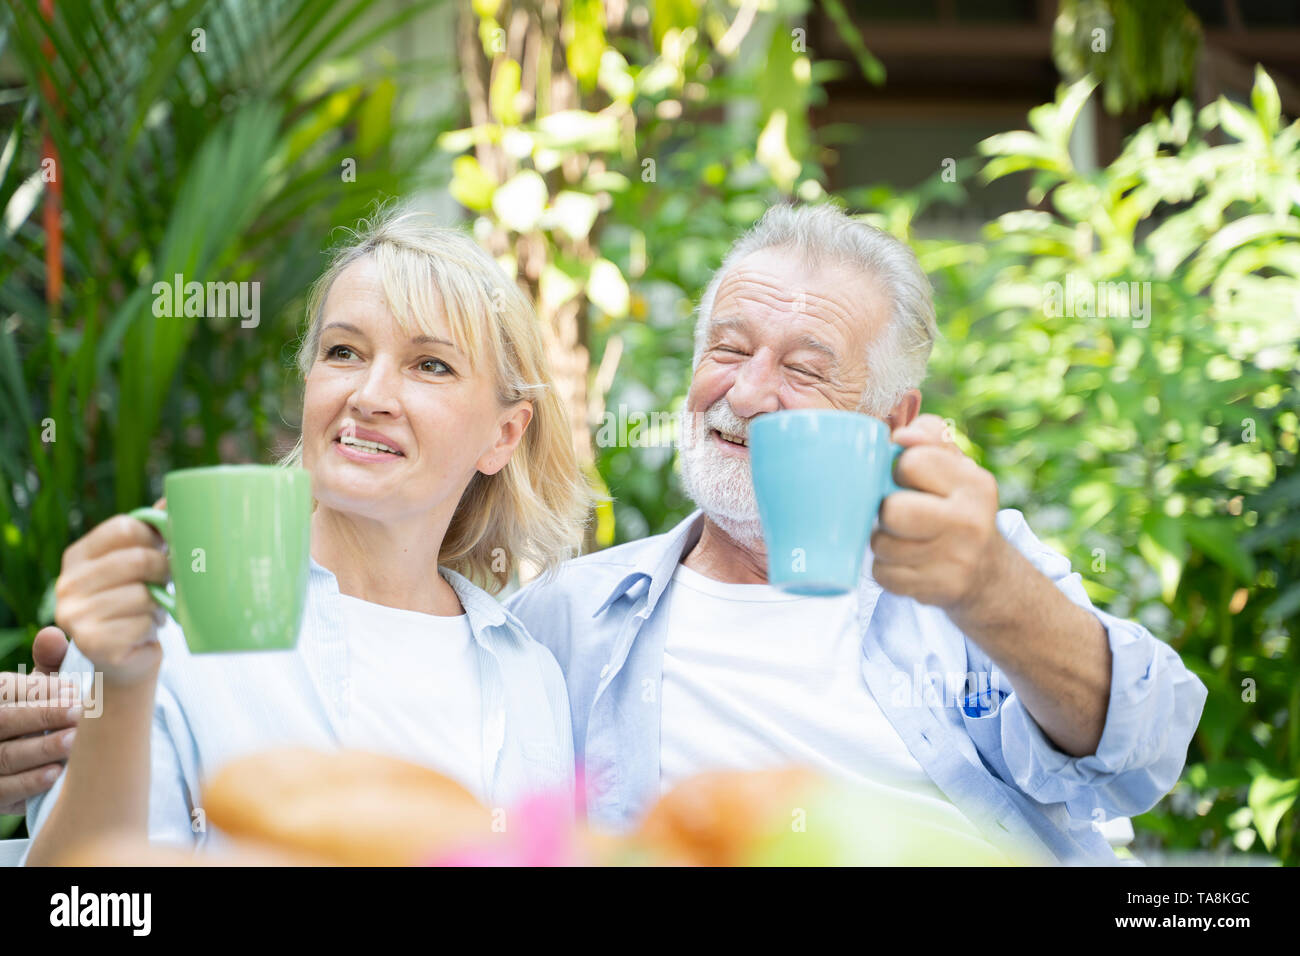 Glückliche Momente. Freudige Rentenalter nettes Paar in Kaffee und Lachen, während ihre Zeit zusammen genießen - Bild Stockfoto